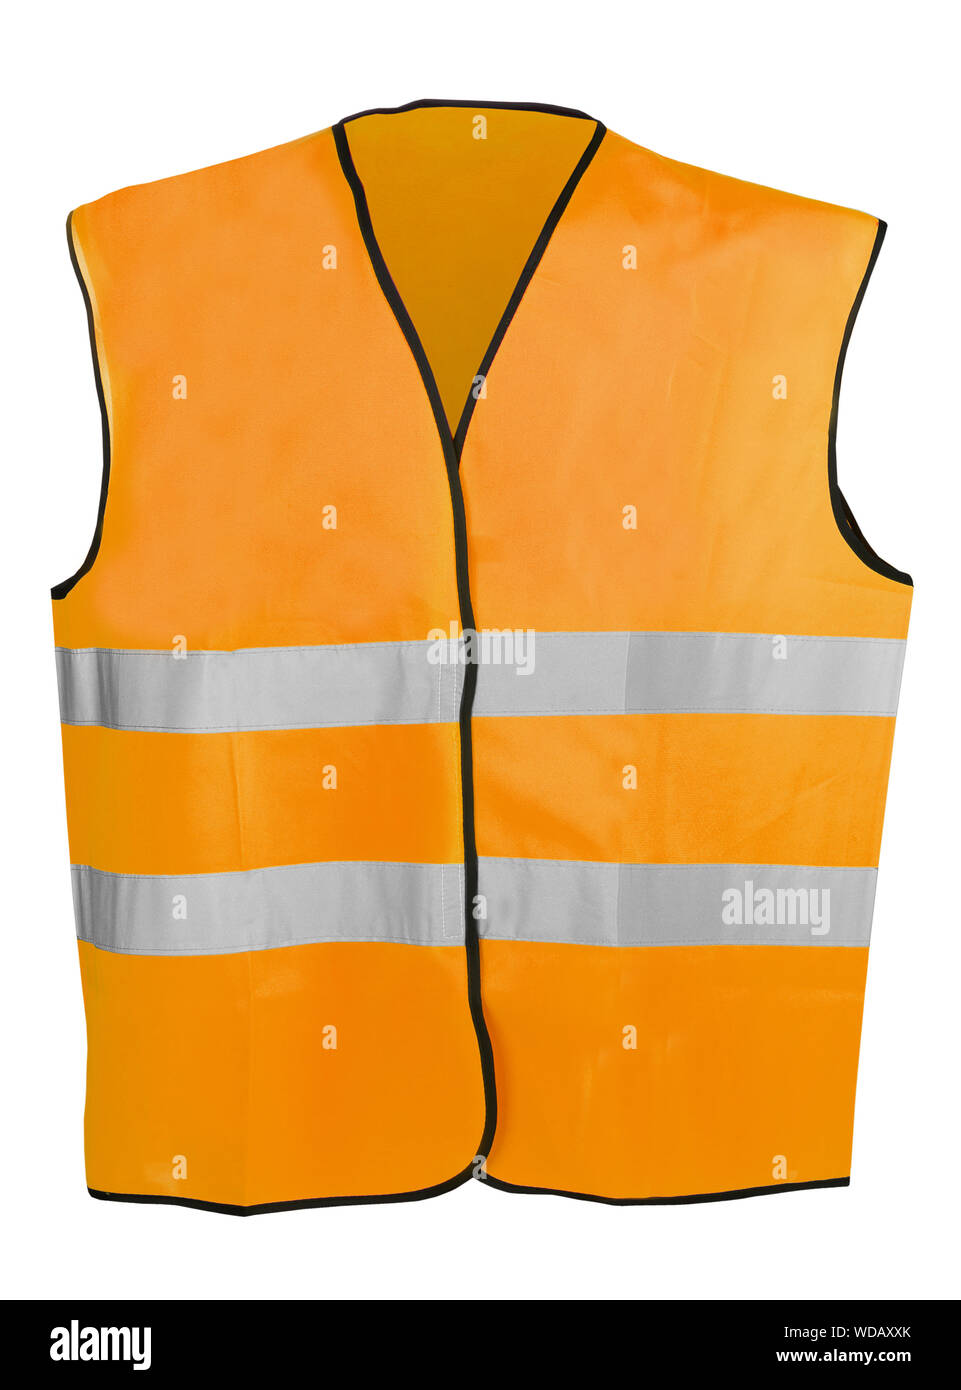 Gilet de sécurité haute visibilité orange isolé sur fond blanc Banque D'Images